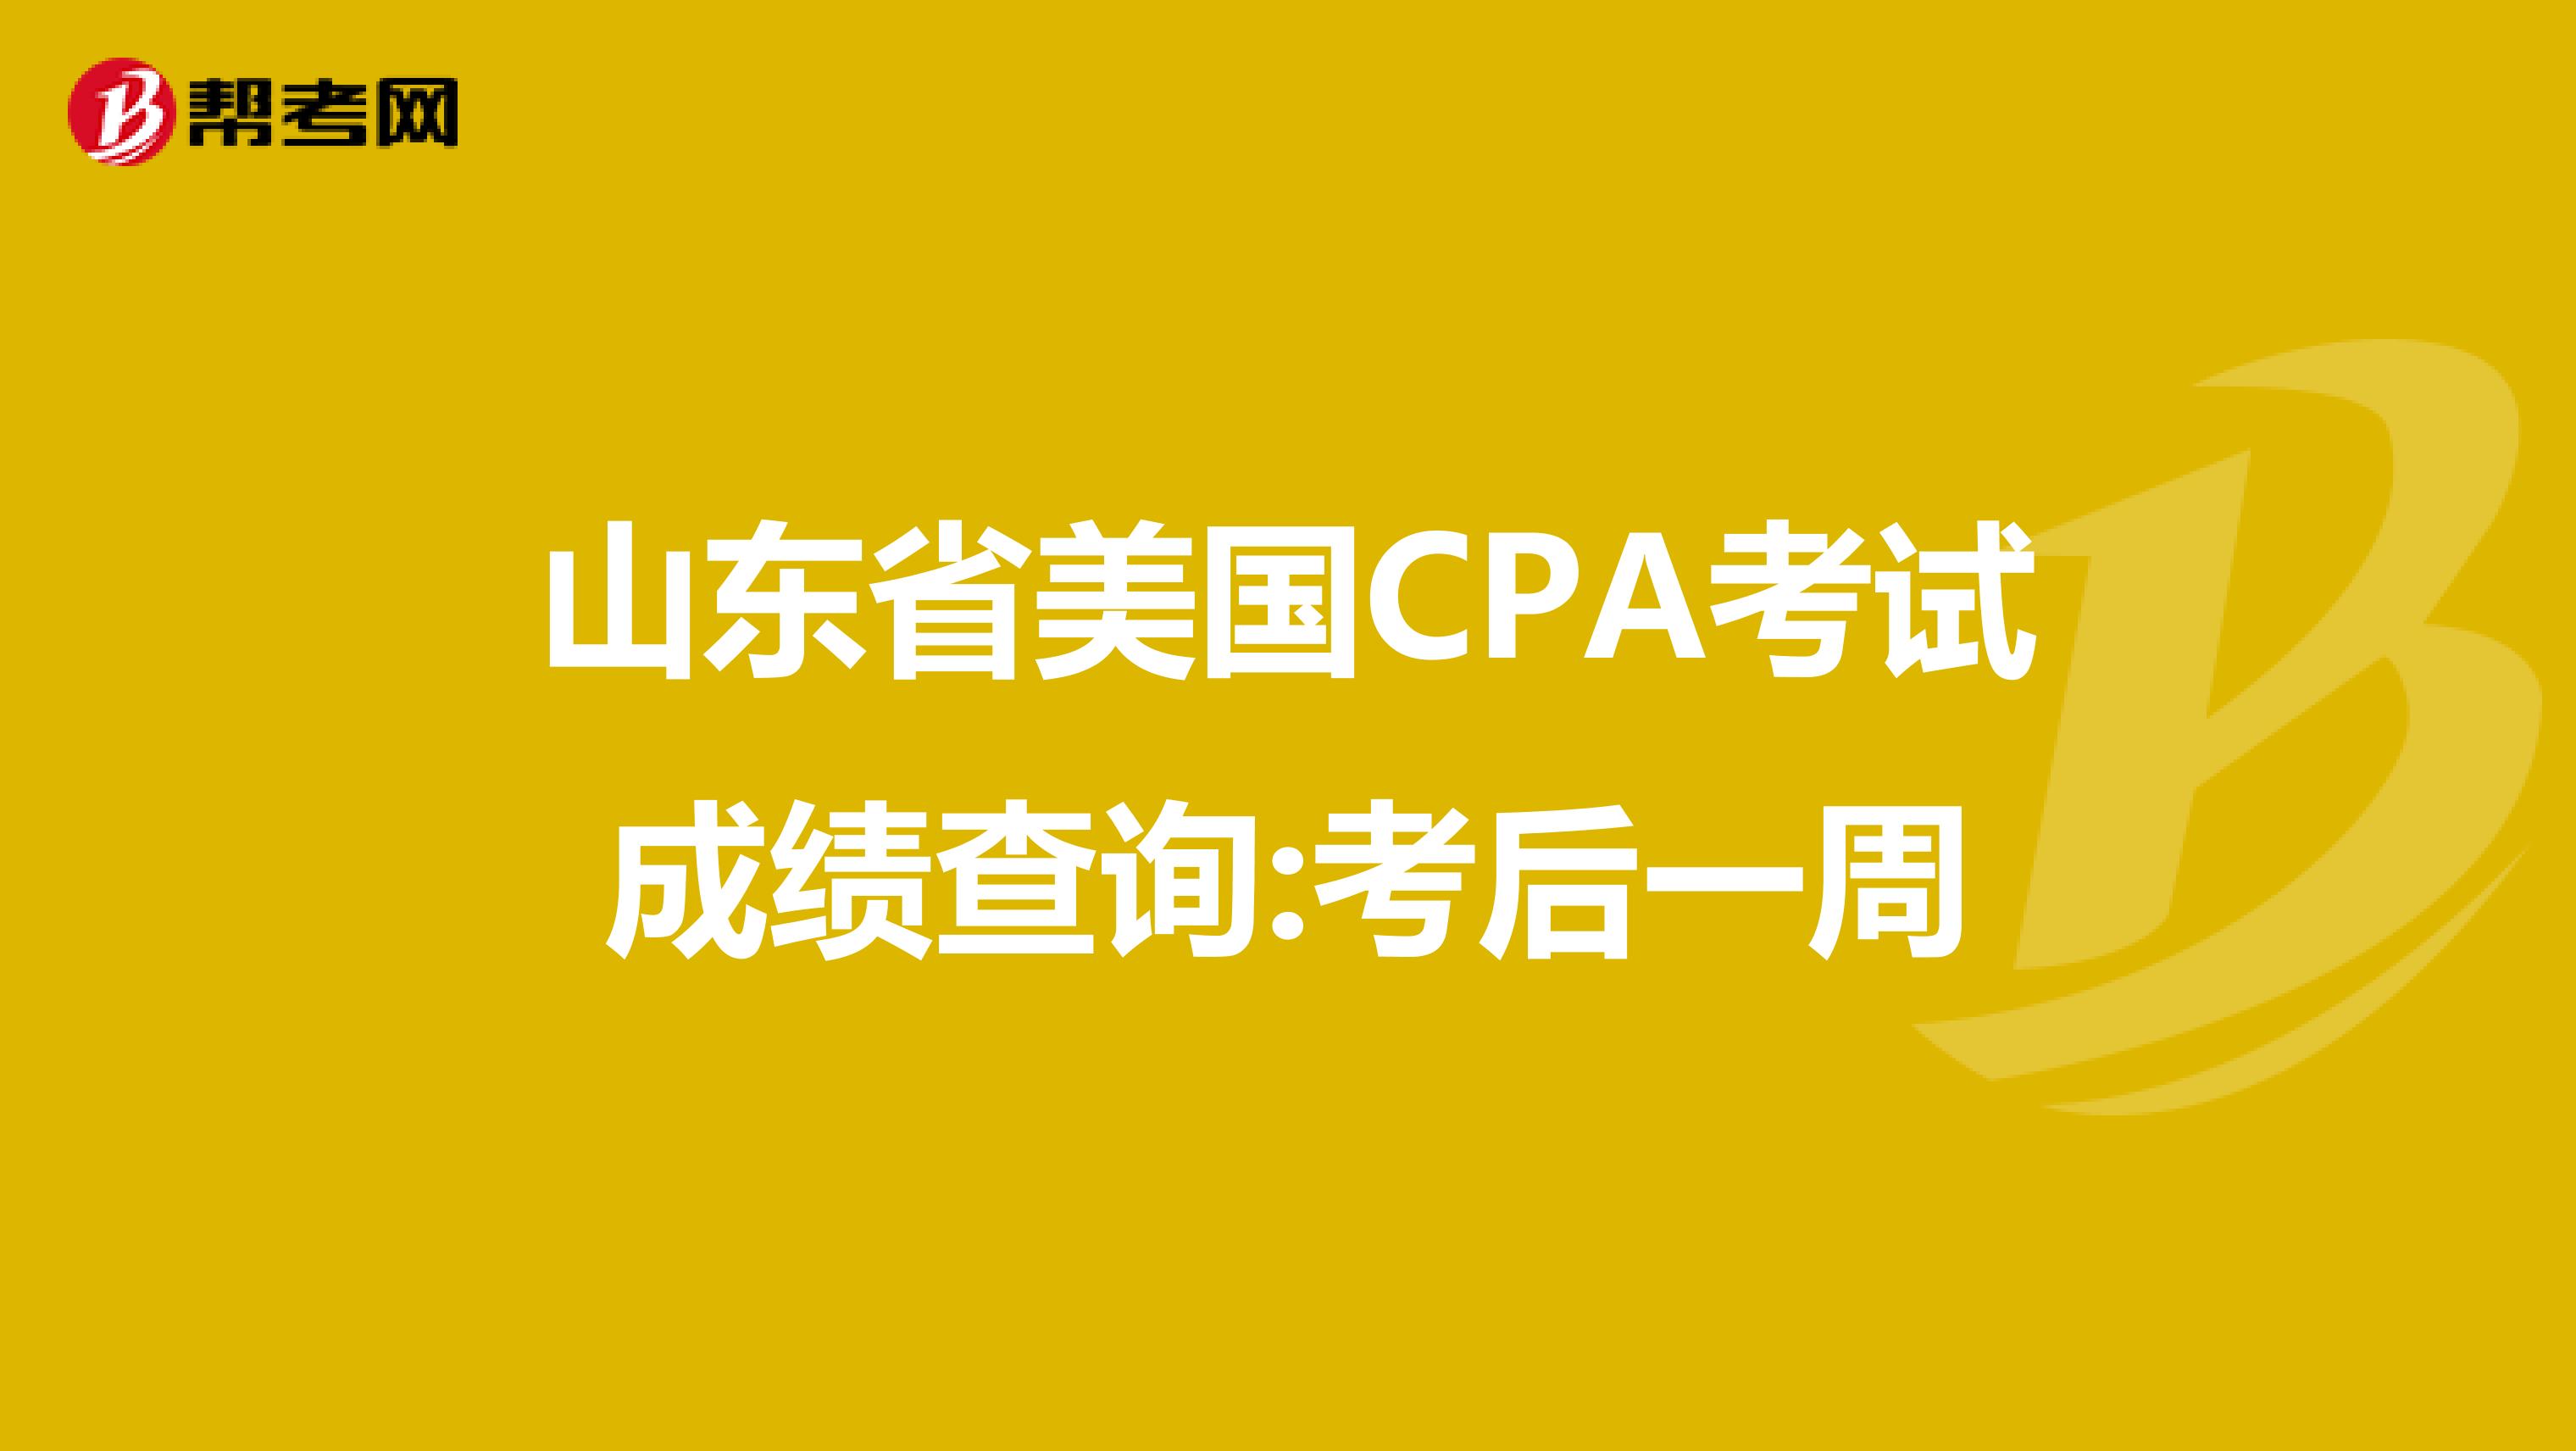 山东省美国CPA考试成绩查询:考后一周